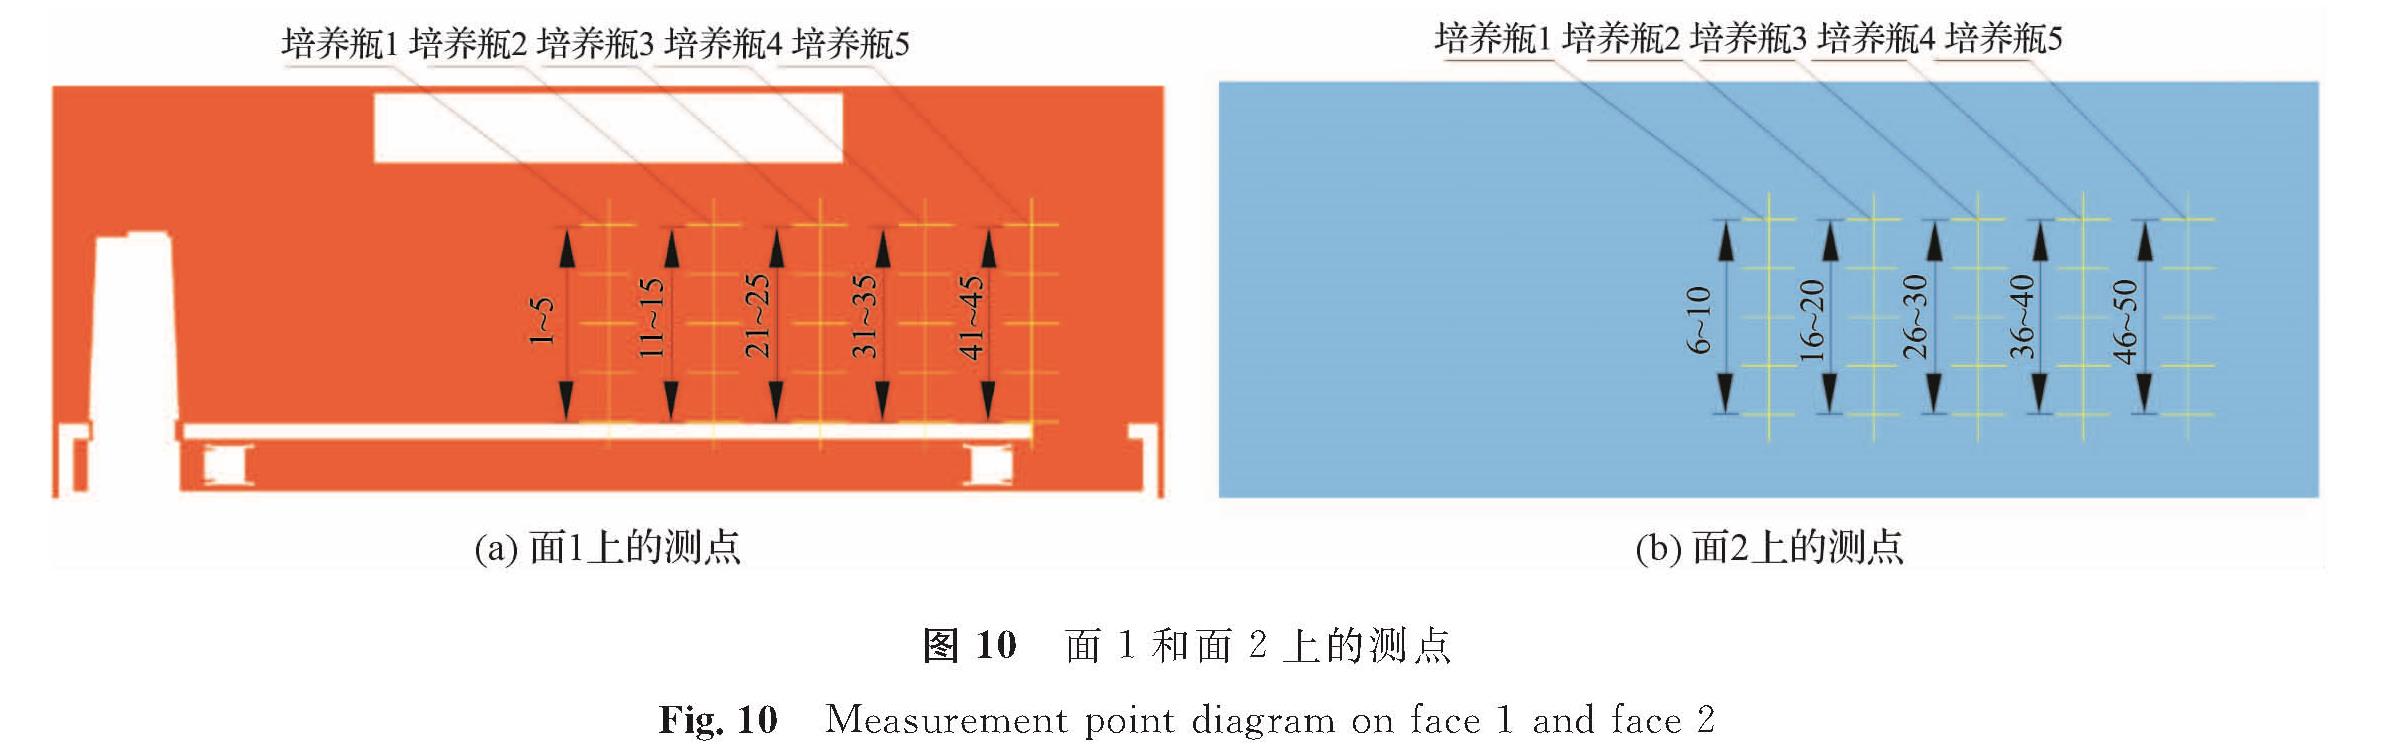 图 10 面1和面2上的测点<br/>Fig.10 Measurement point diagram on face 1 and face 2